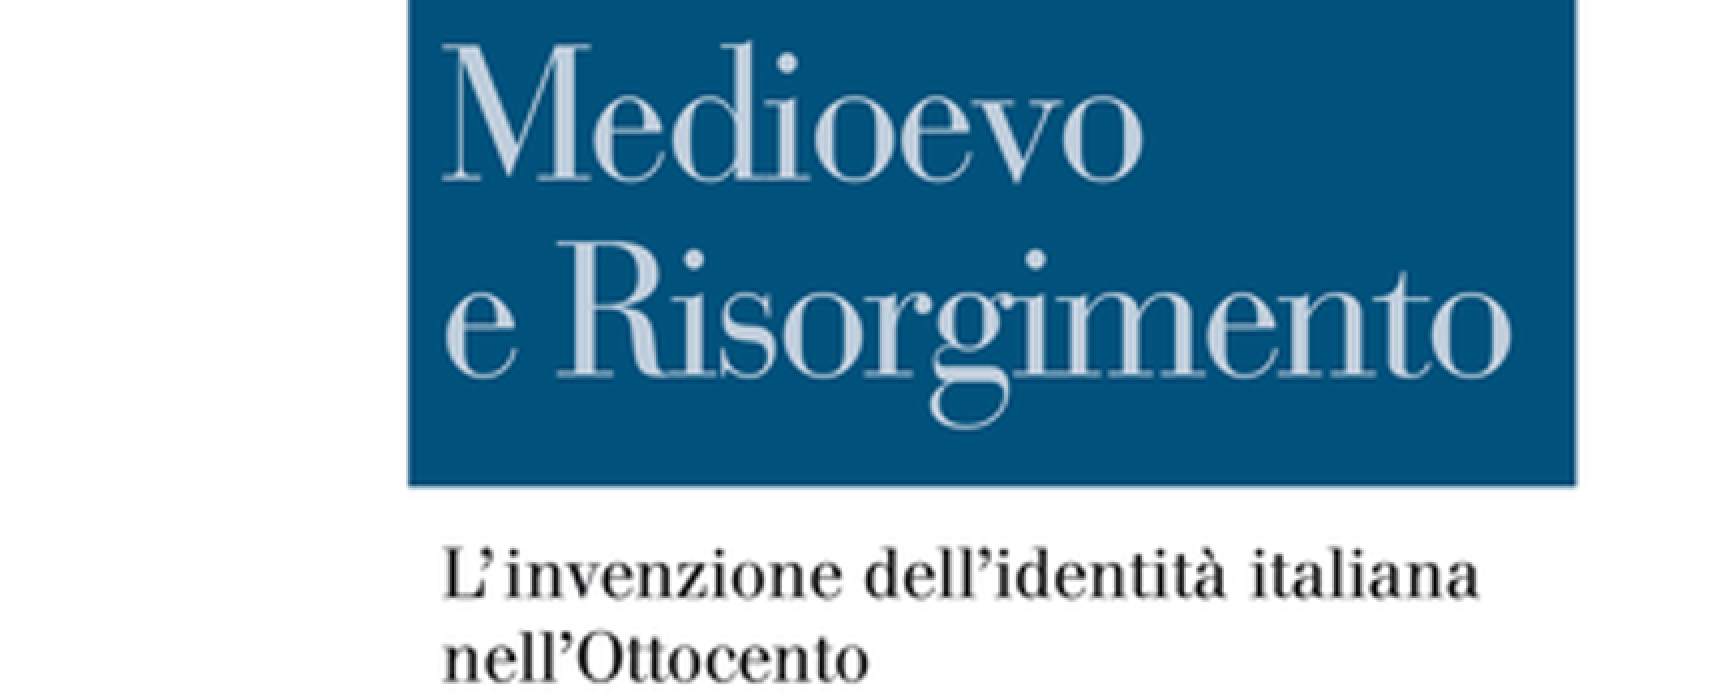 Storia a Santa Margherita, martedì si parla di Medioevo e Risorgimento con Duccio Balestracci